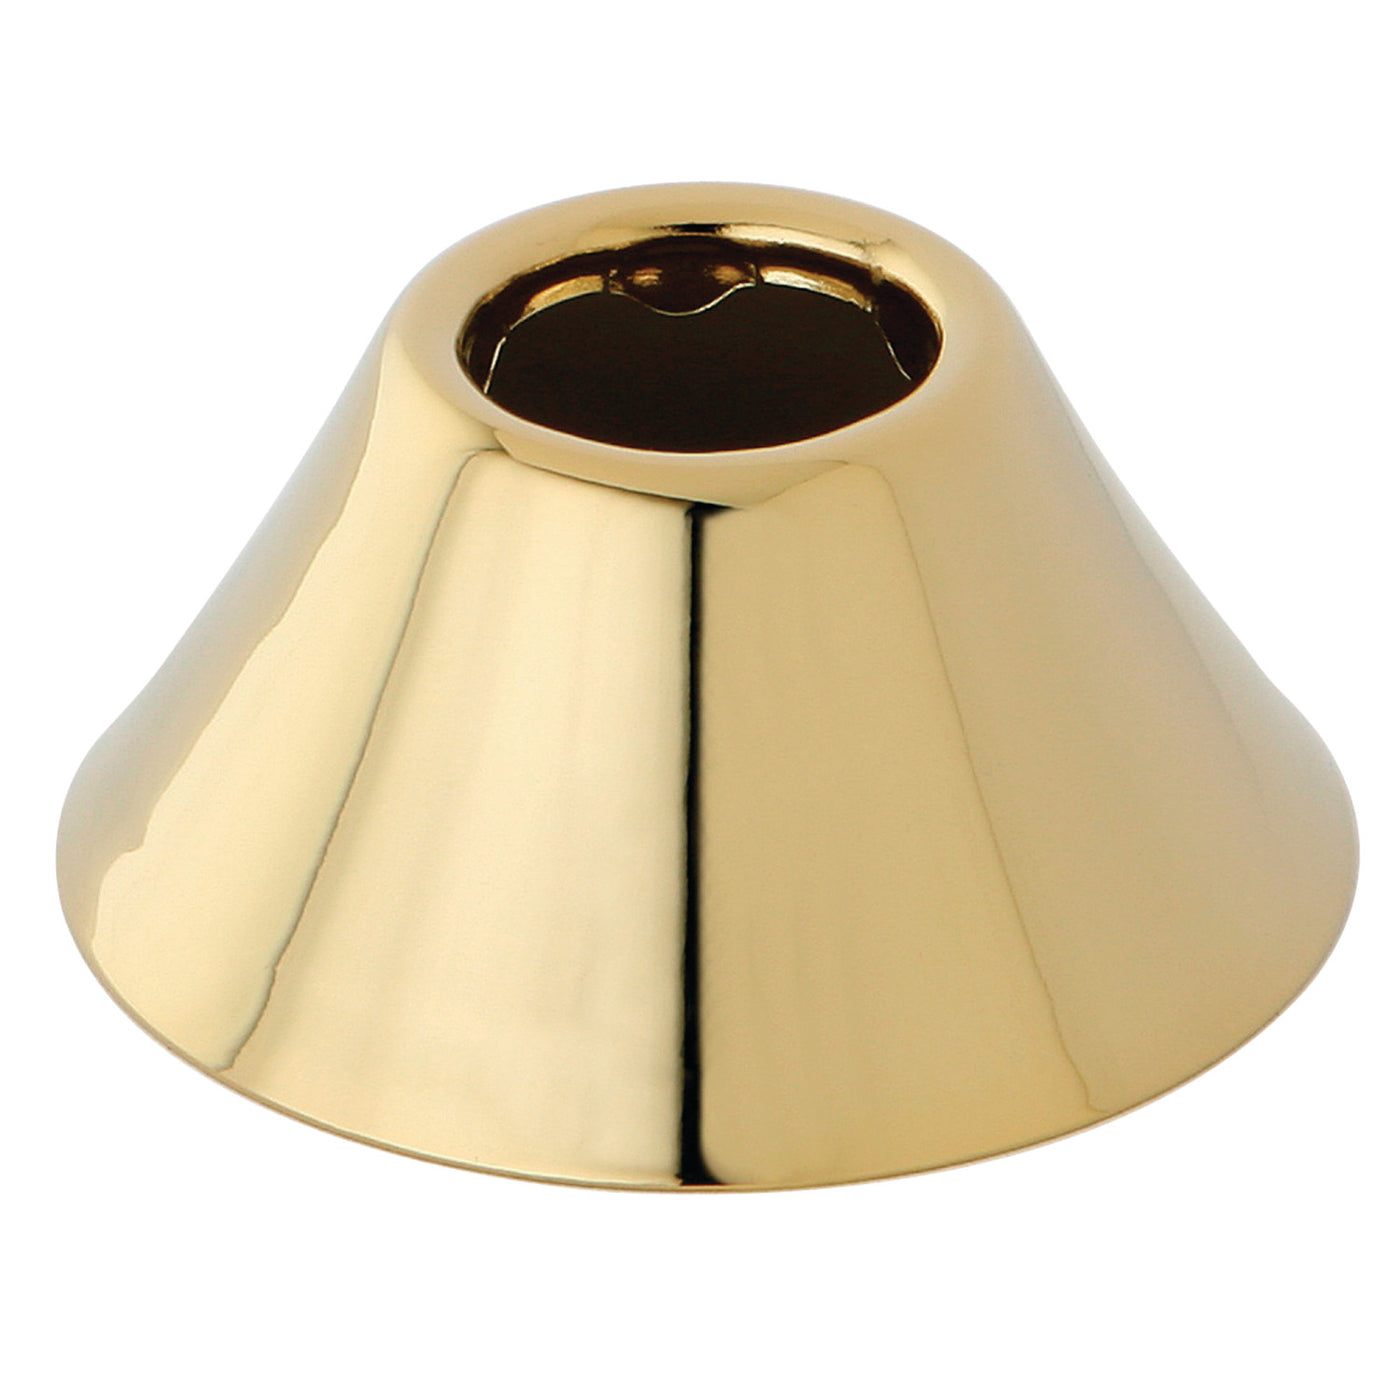 Elements of Design EFLBELL122 Bell Flange, Polished Brass